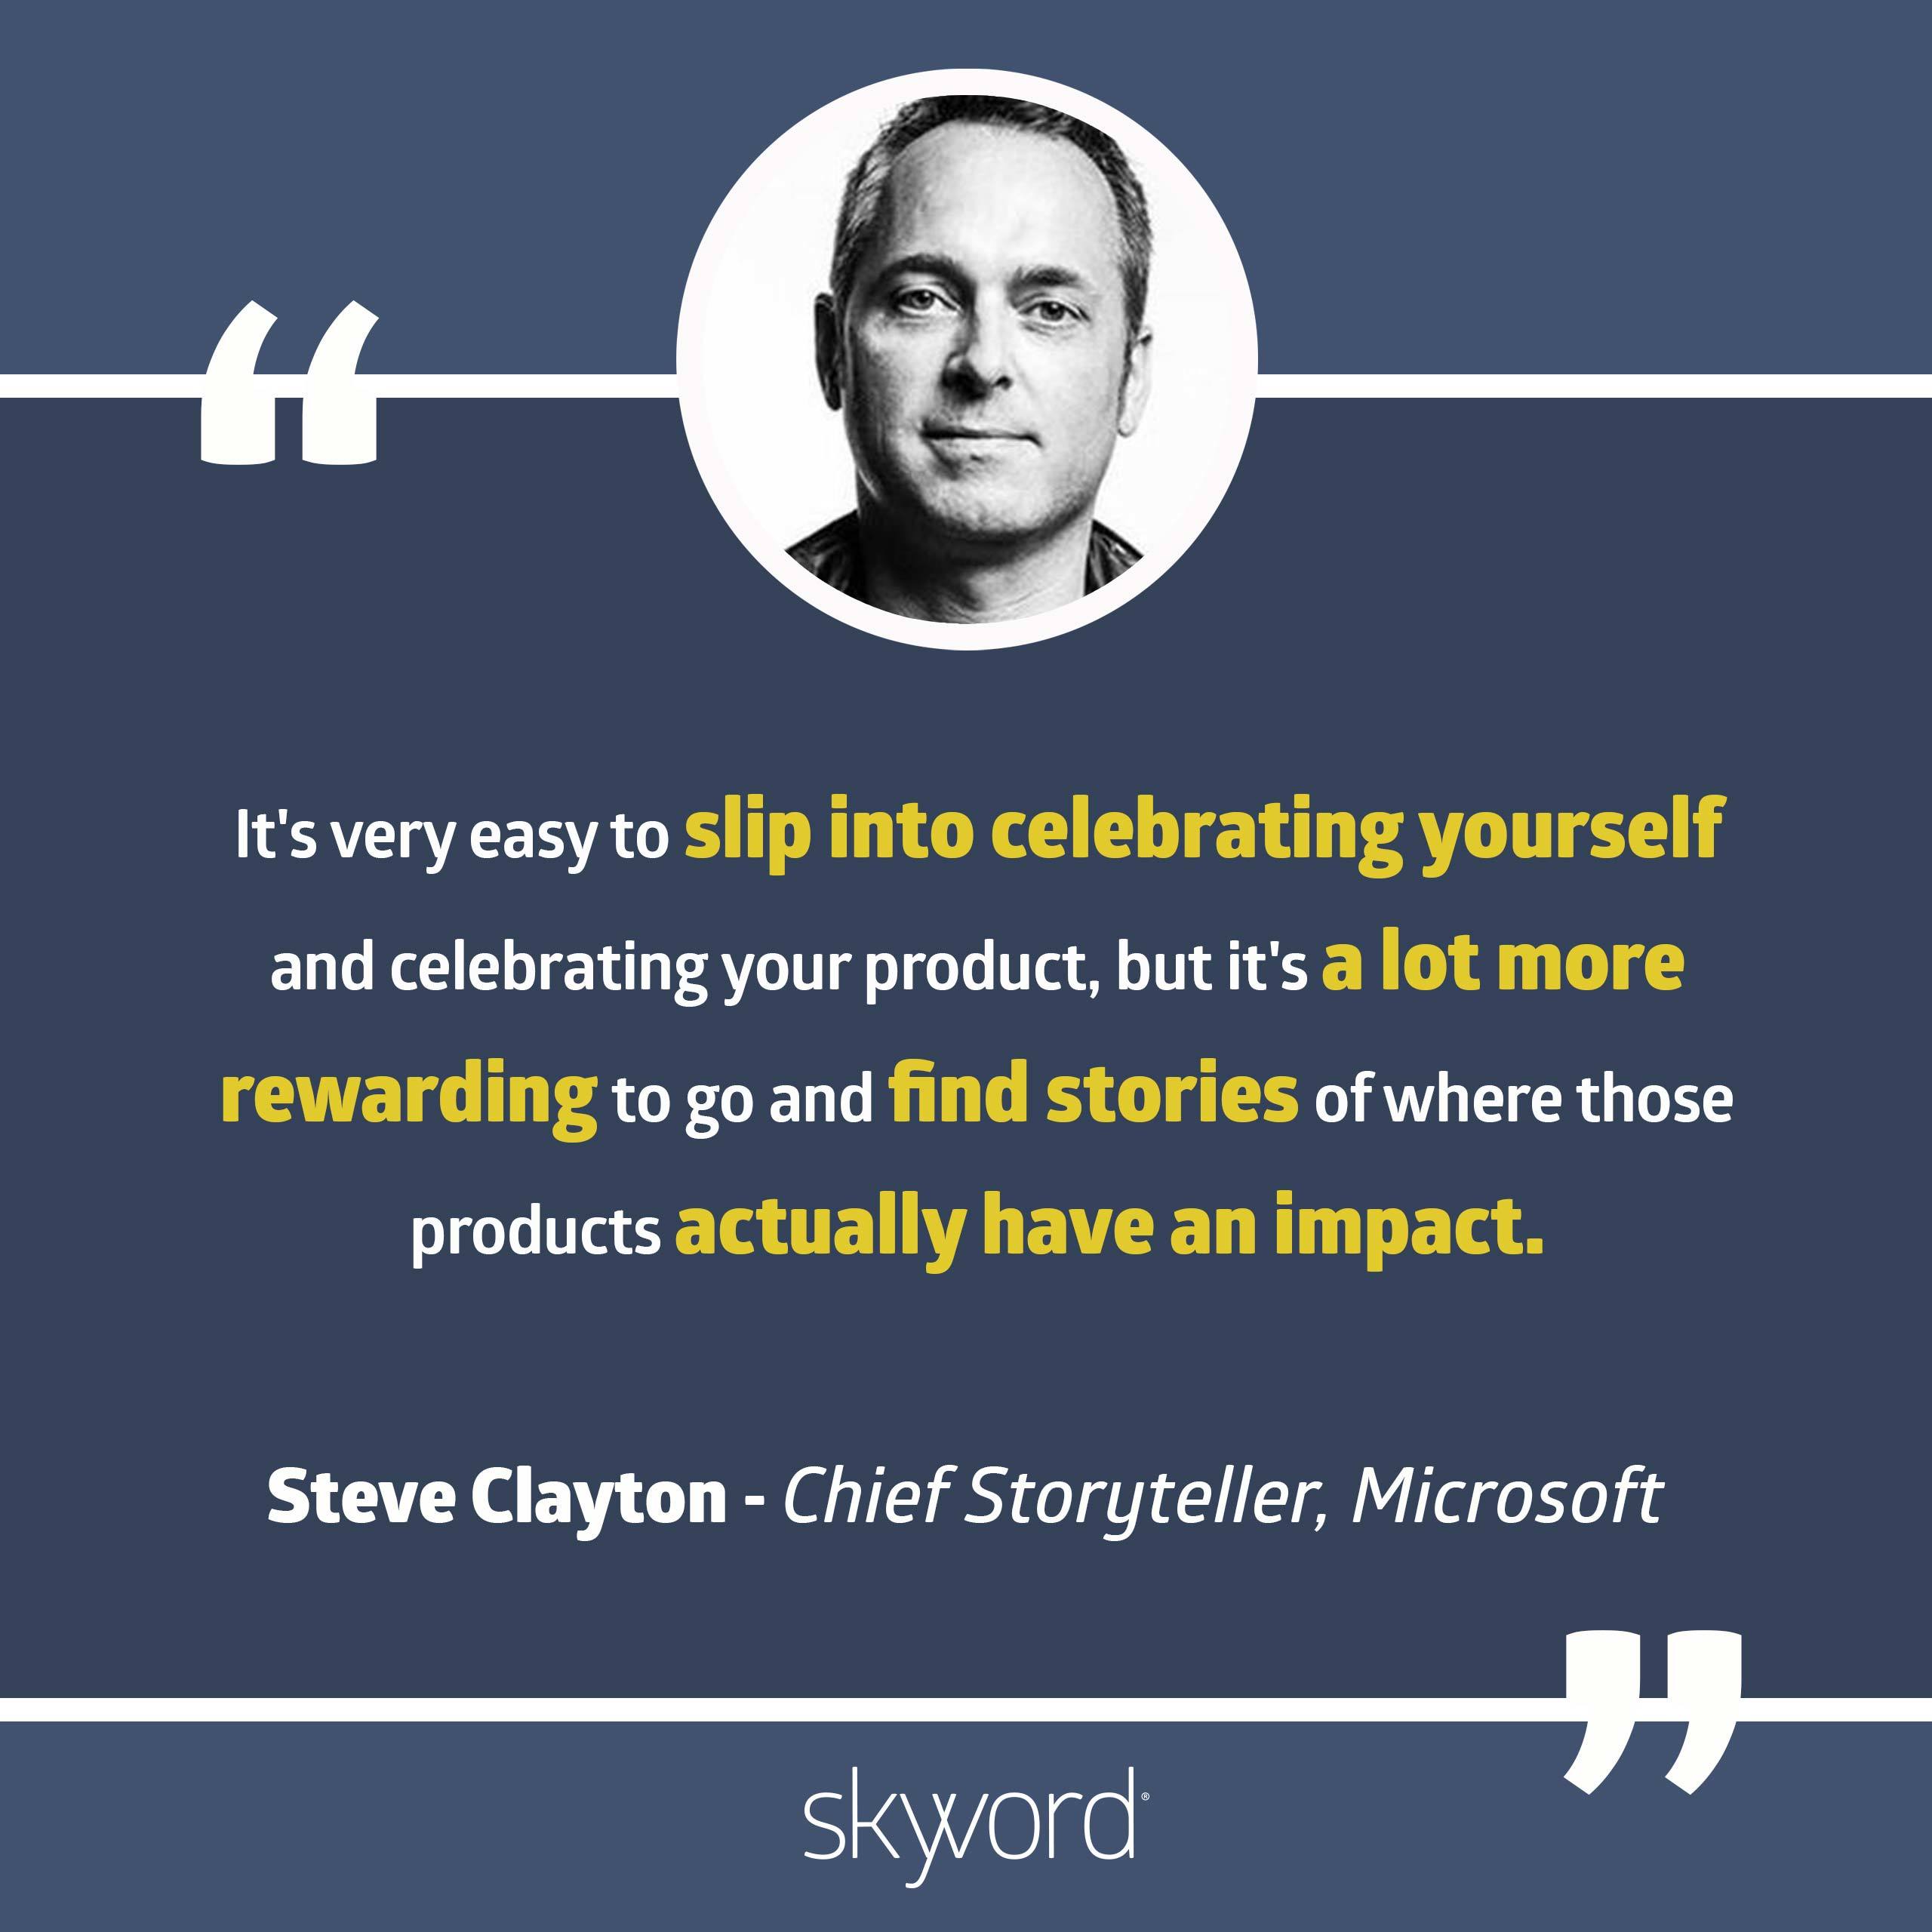 Steve Clayton, Chief Storyteller, Microsoft